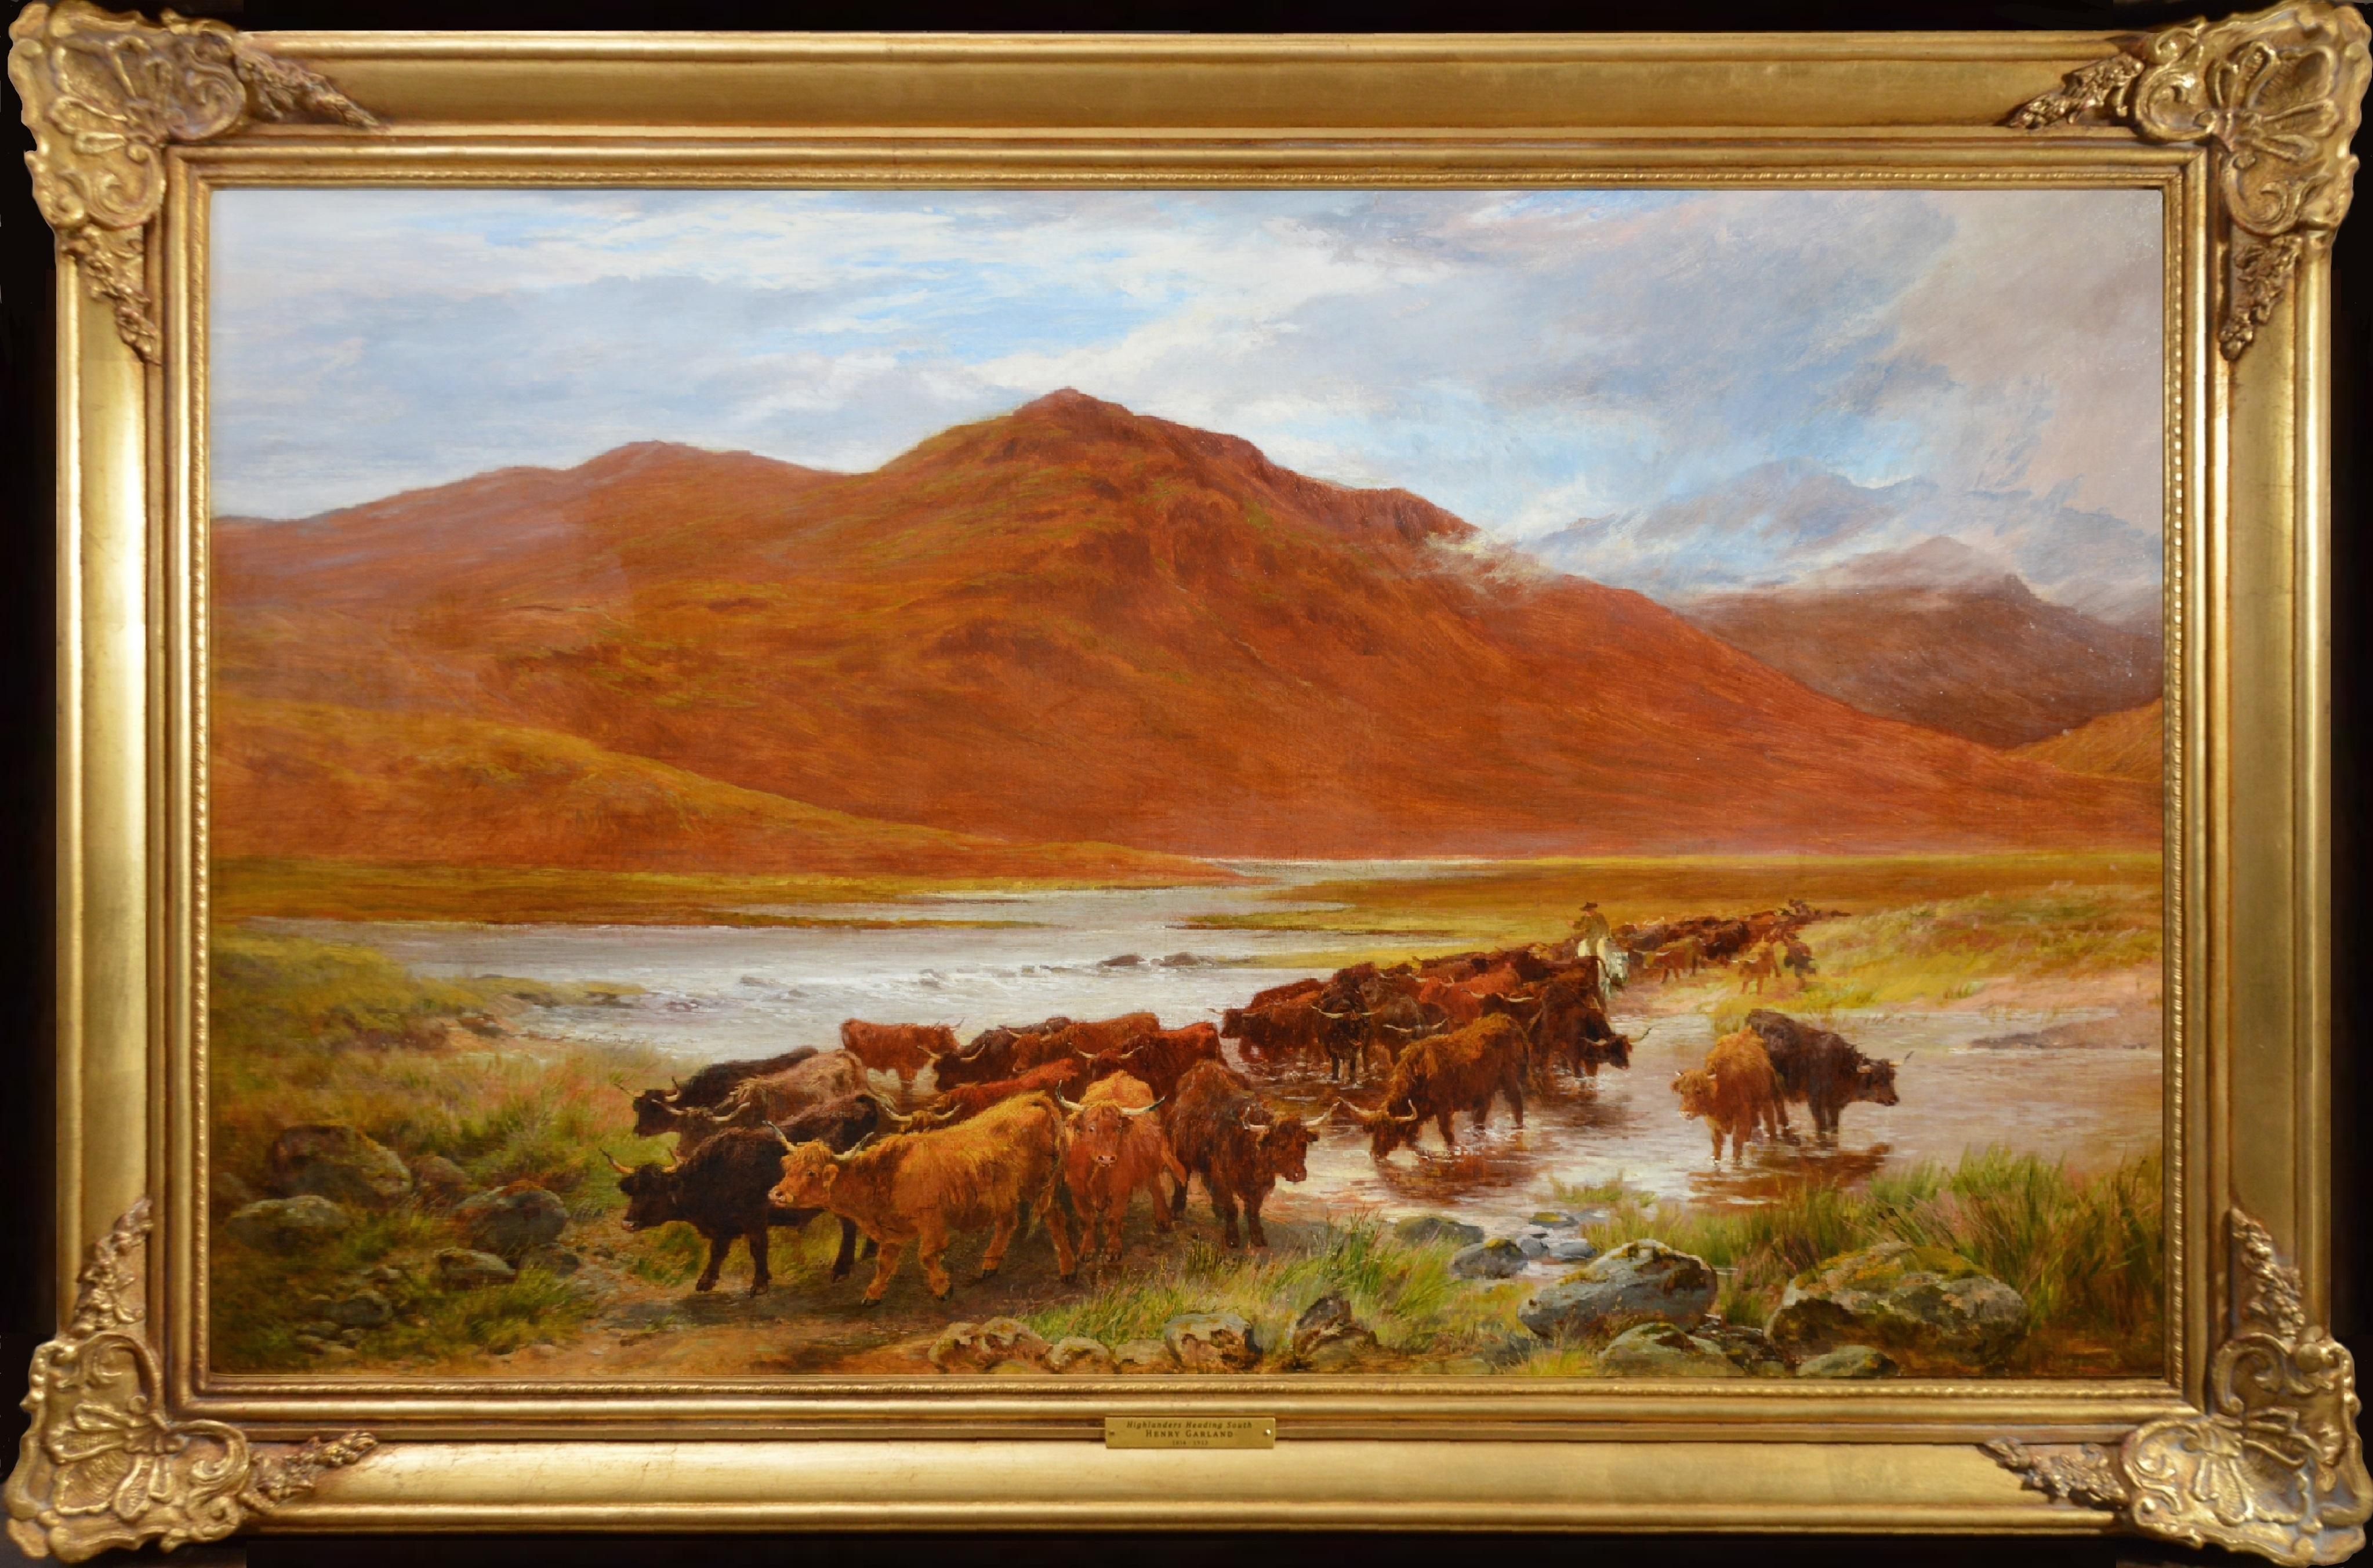 Animal Painting Henry Garland - Highlanders Heading South - Grande peinture à l'huile des Highlands écossaises du 19e siècle